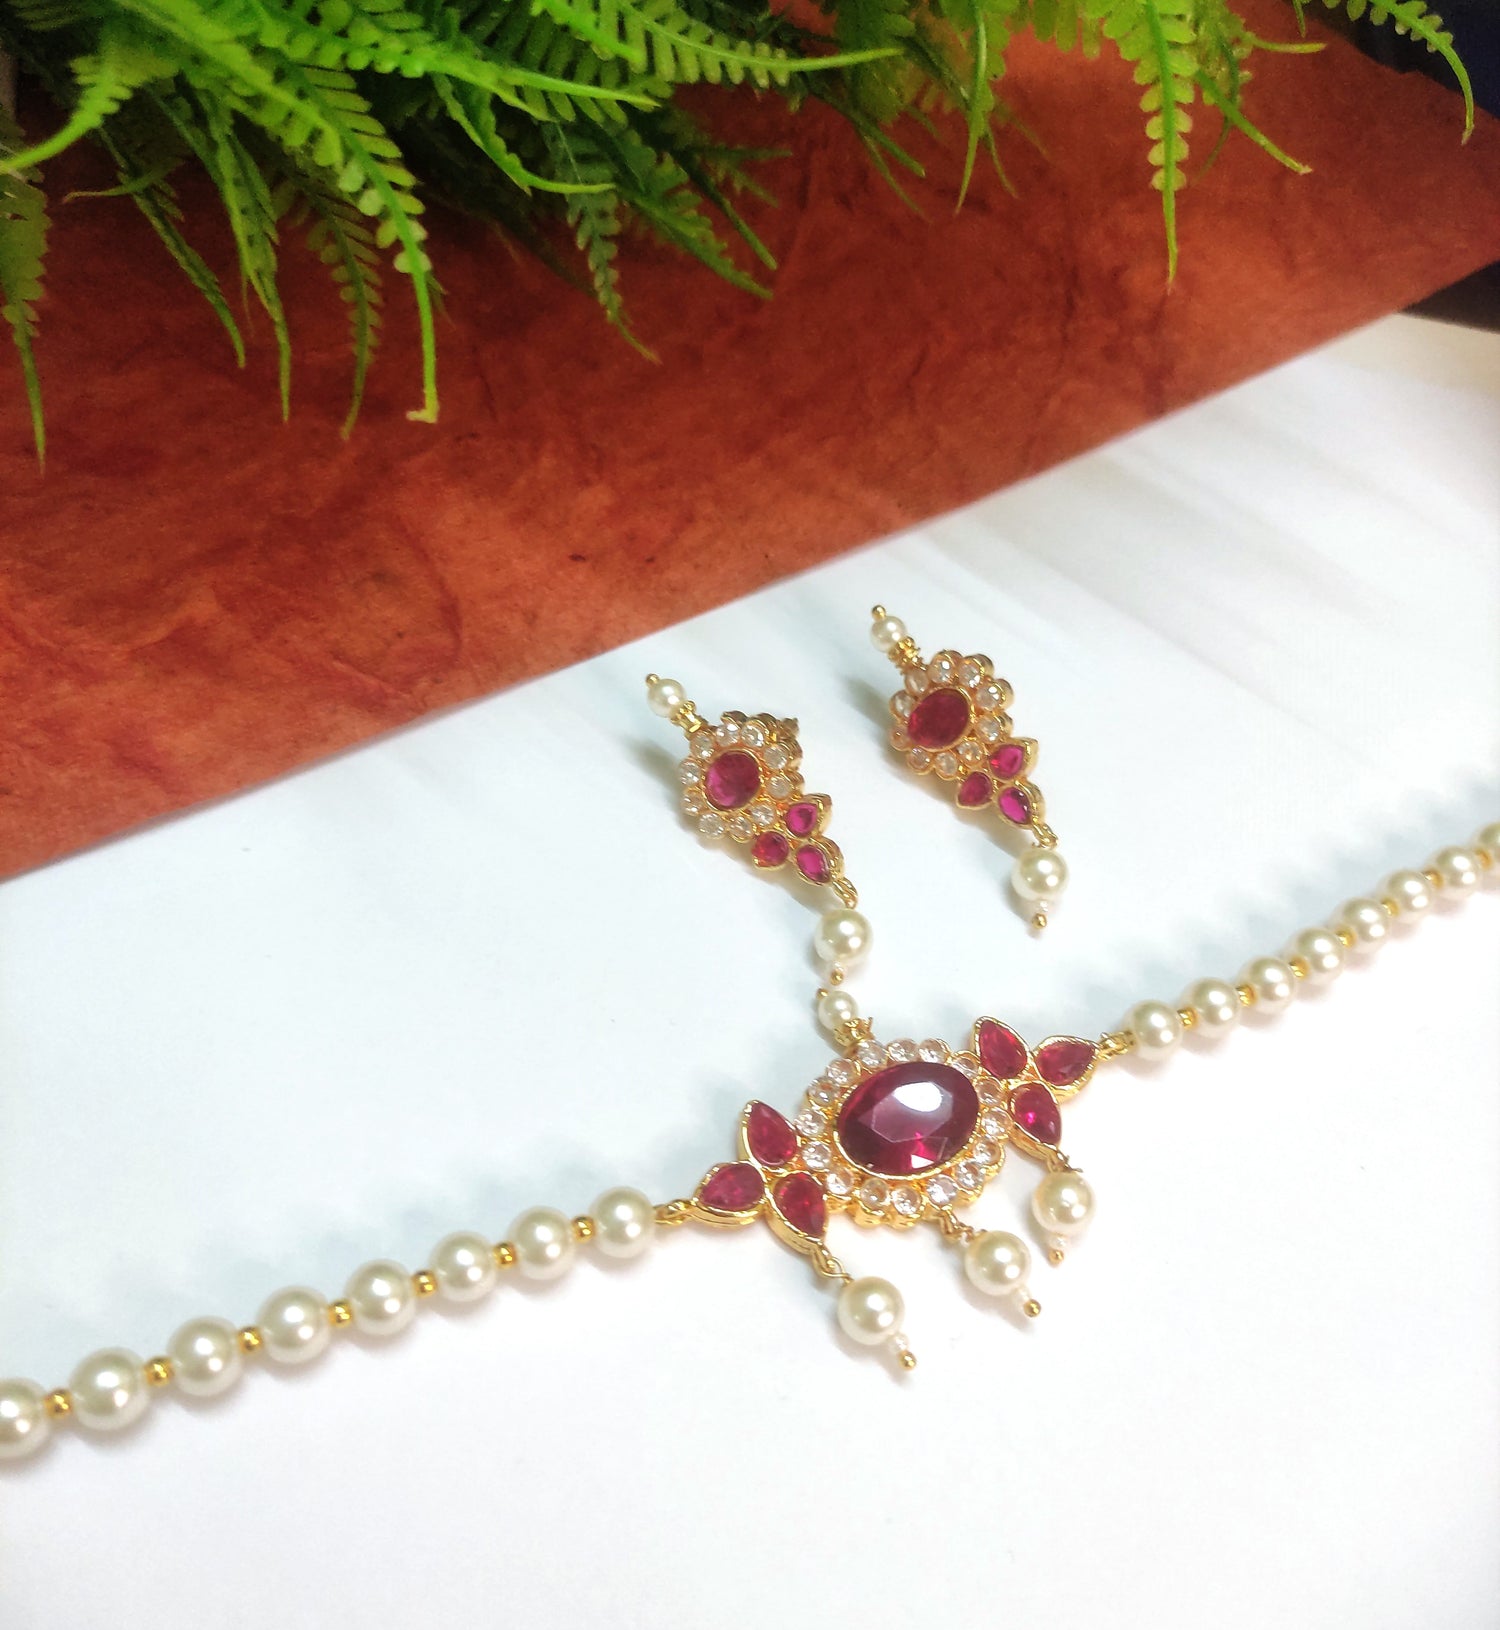 Maharashtrian jewelry